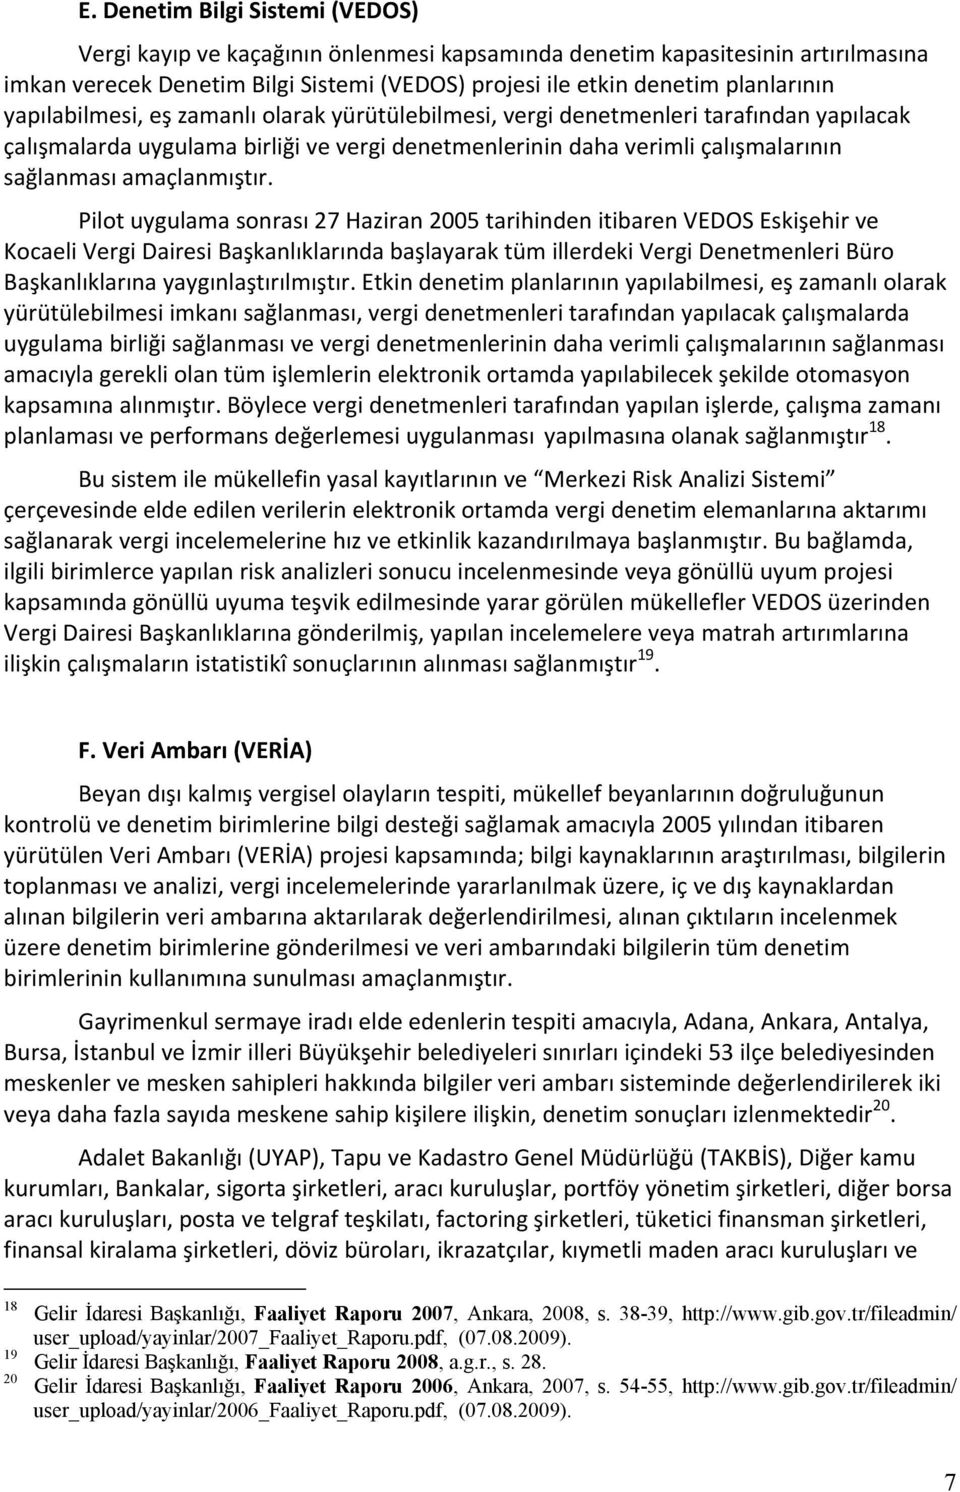 Pilot uygulama sonrası 27 Haziran 2005 tarihinden itibaren VEDOS Eskişehir ve Kocaeli Vergi Dairesi Başkanlıklarında başlayarak tüm illerdeki Vergi Denetmenleri Büro Başkanlıklarına